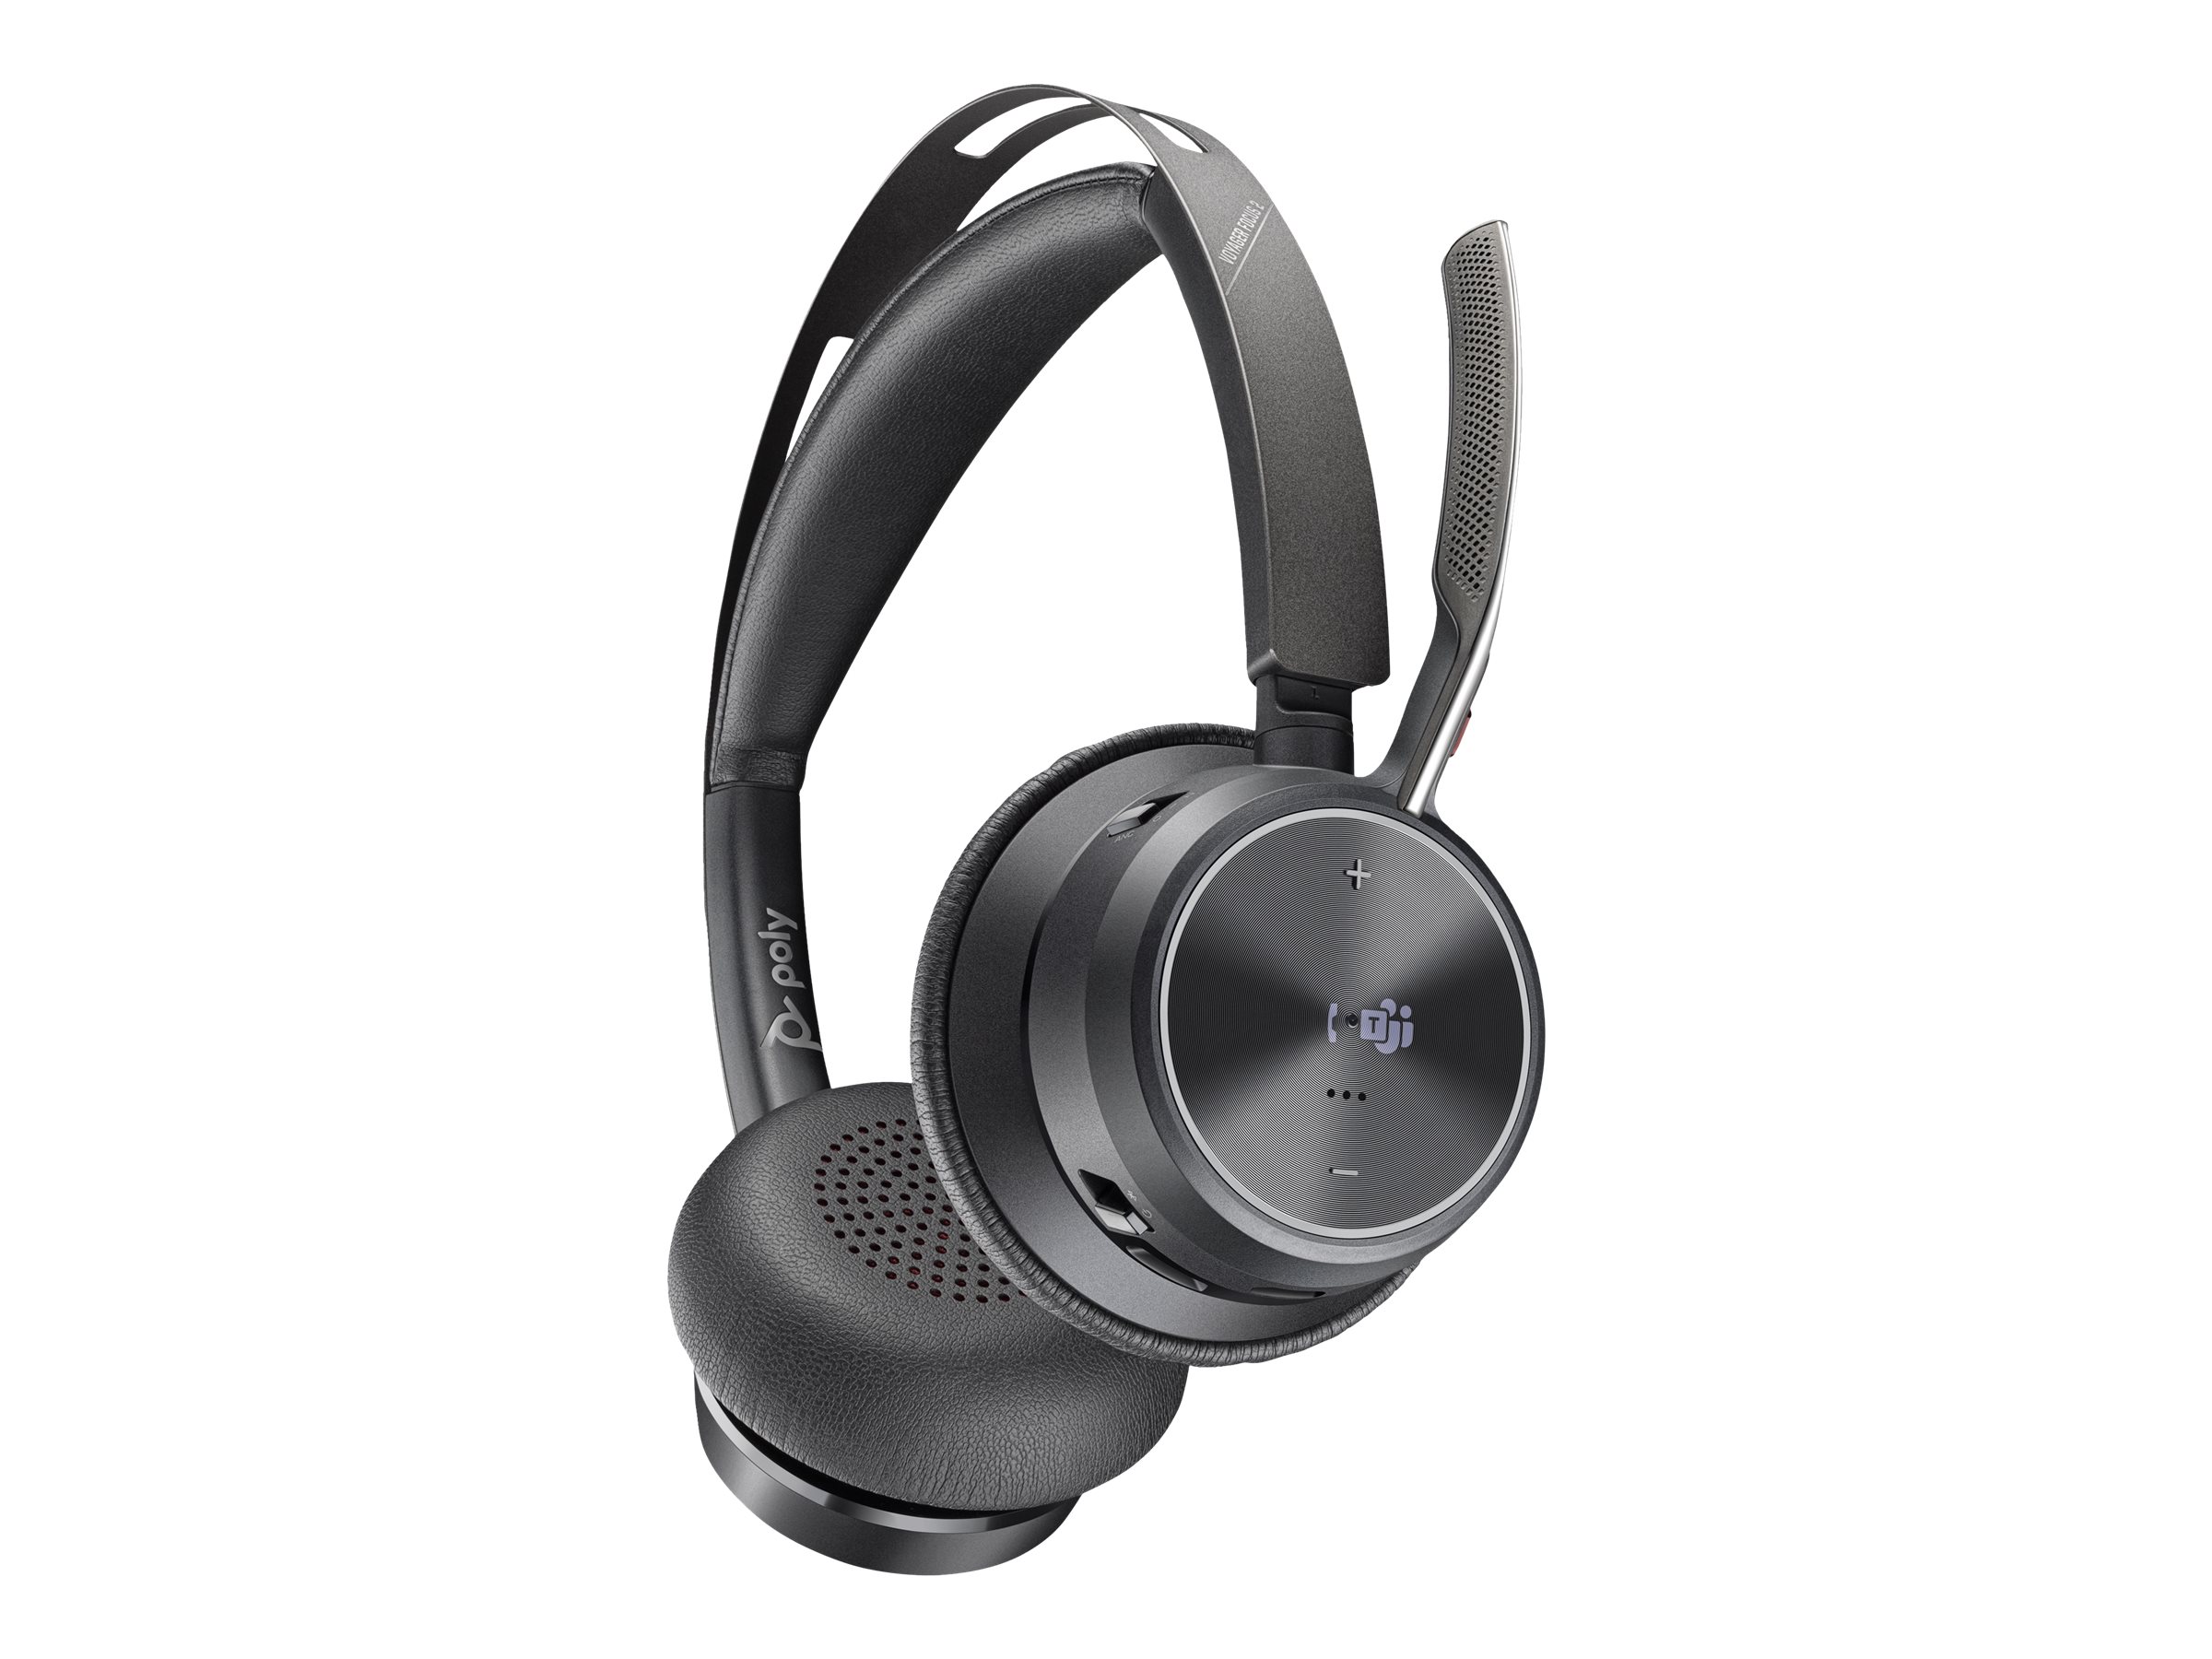 Poly Voyager Focus 2-M - Headset - On-Ear - Bluetooth - kabellos, kabelgebunden - USB-C